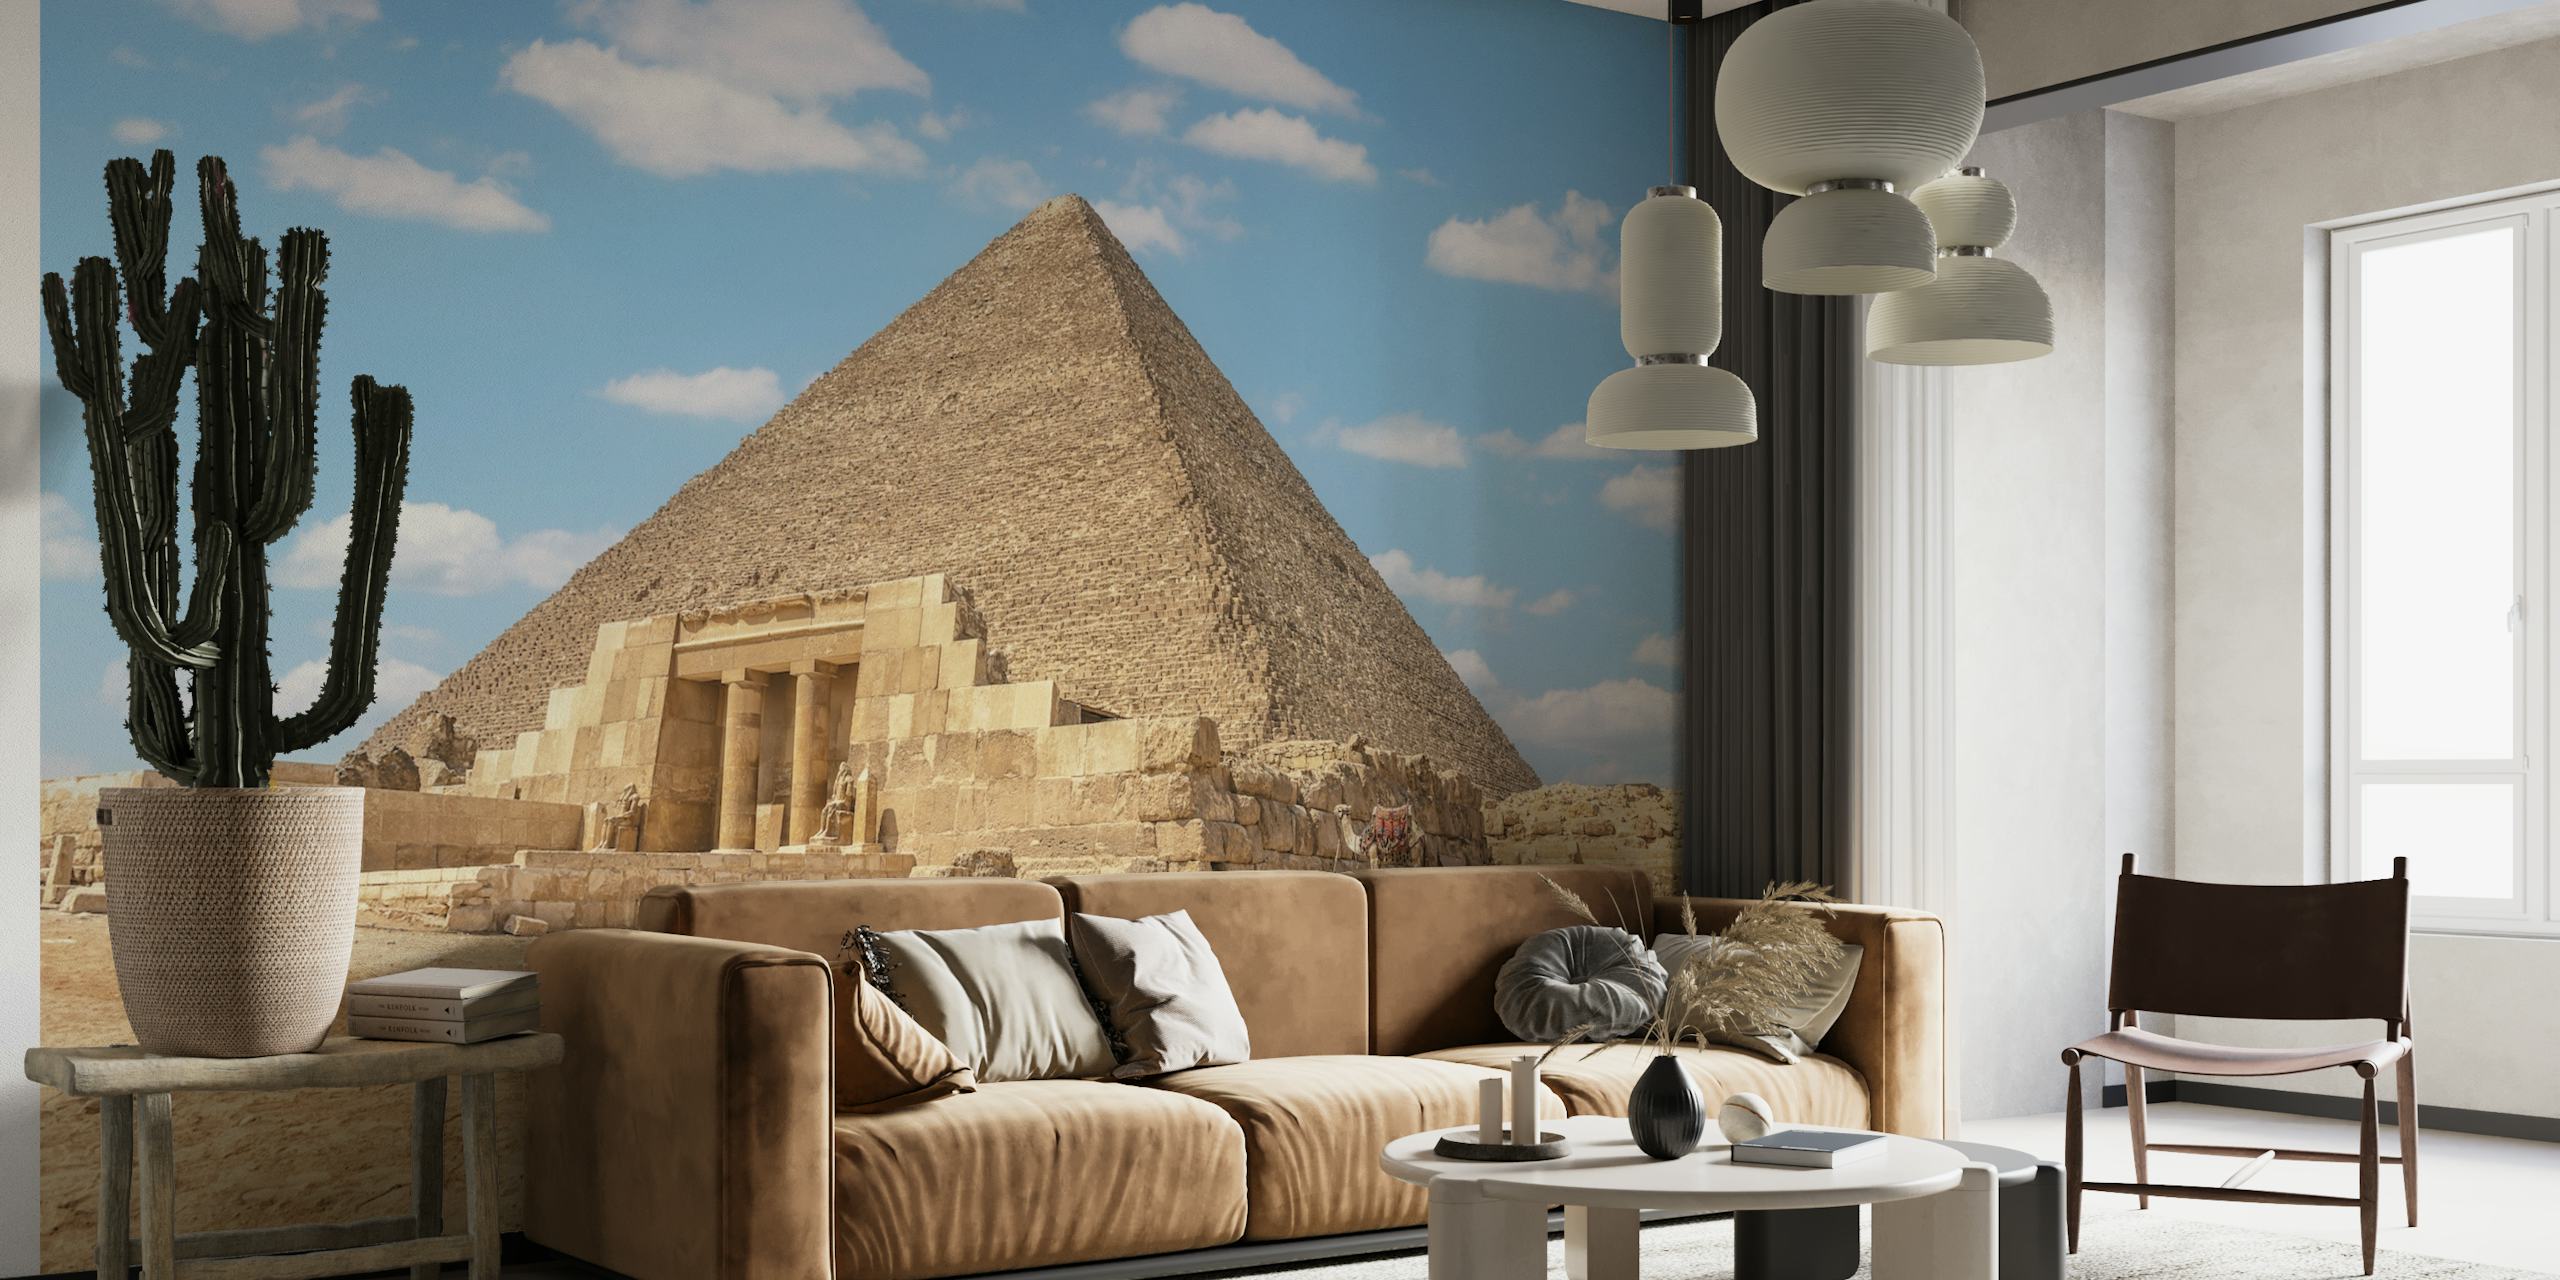 Mural de la Gran Pirámide que representa la antigua pirámide egipcia bajo un cielo despejado en happywall.com